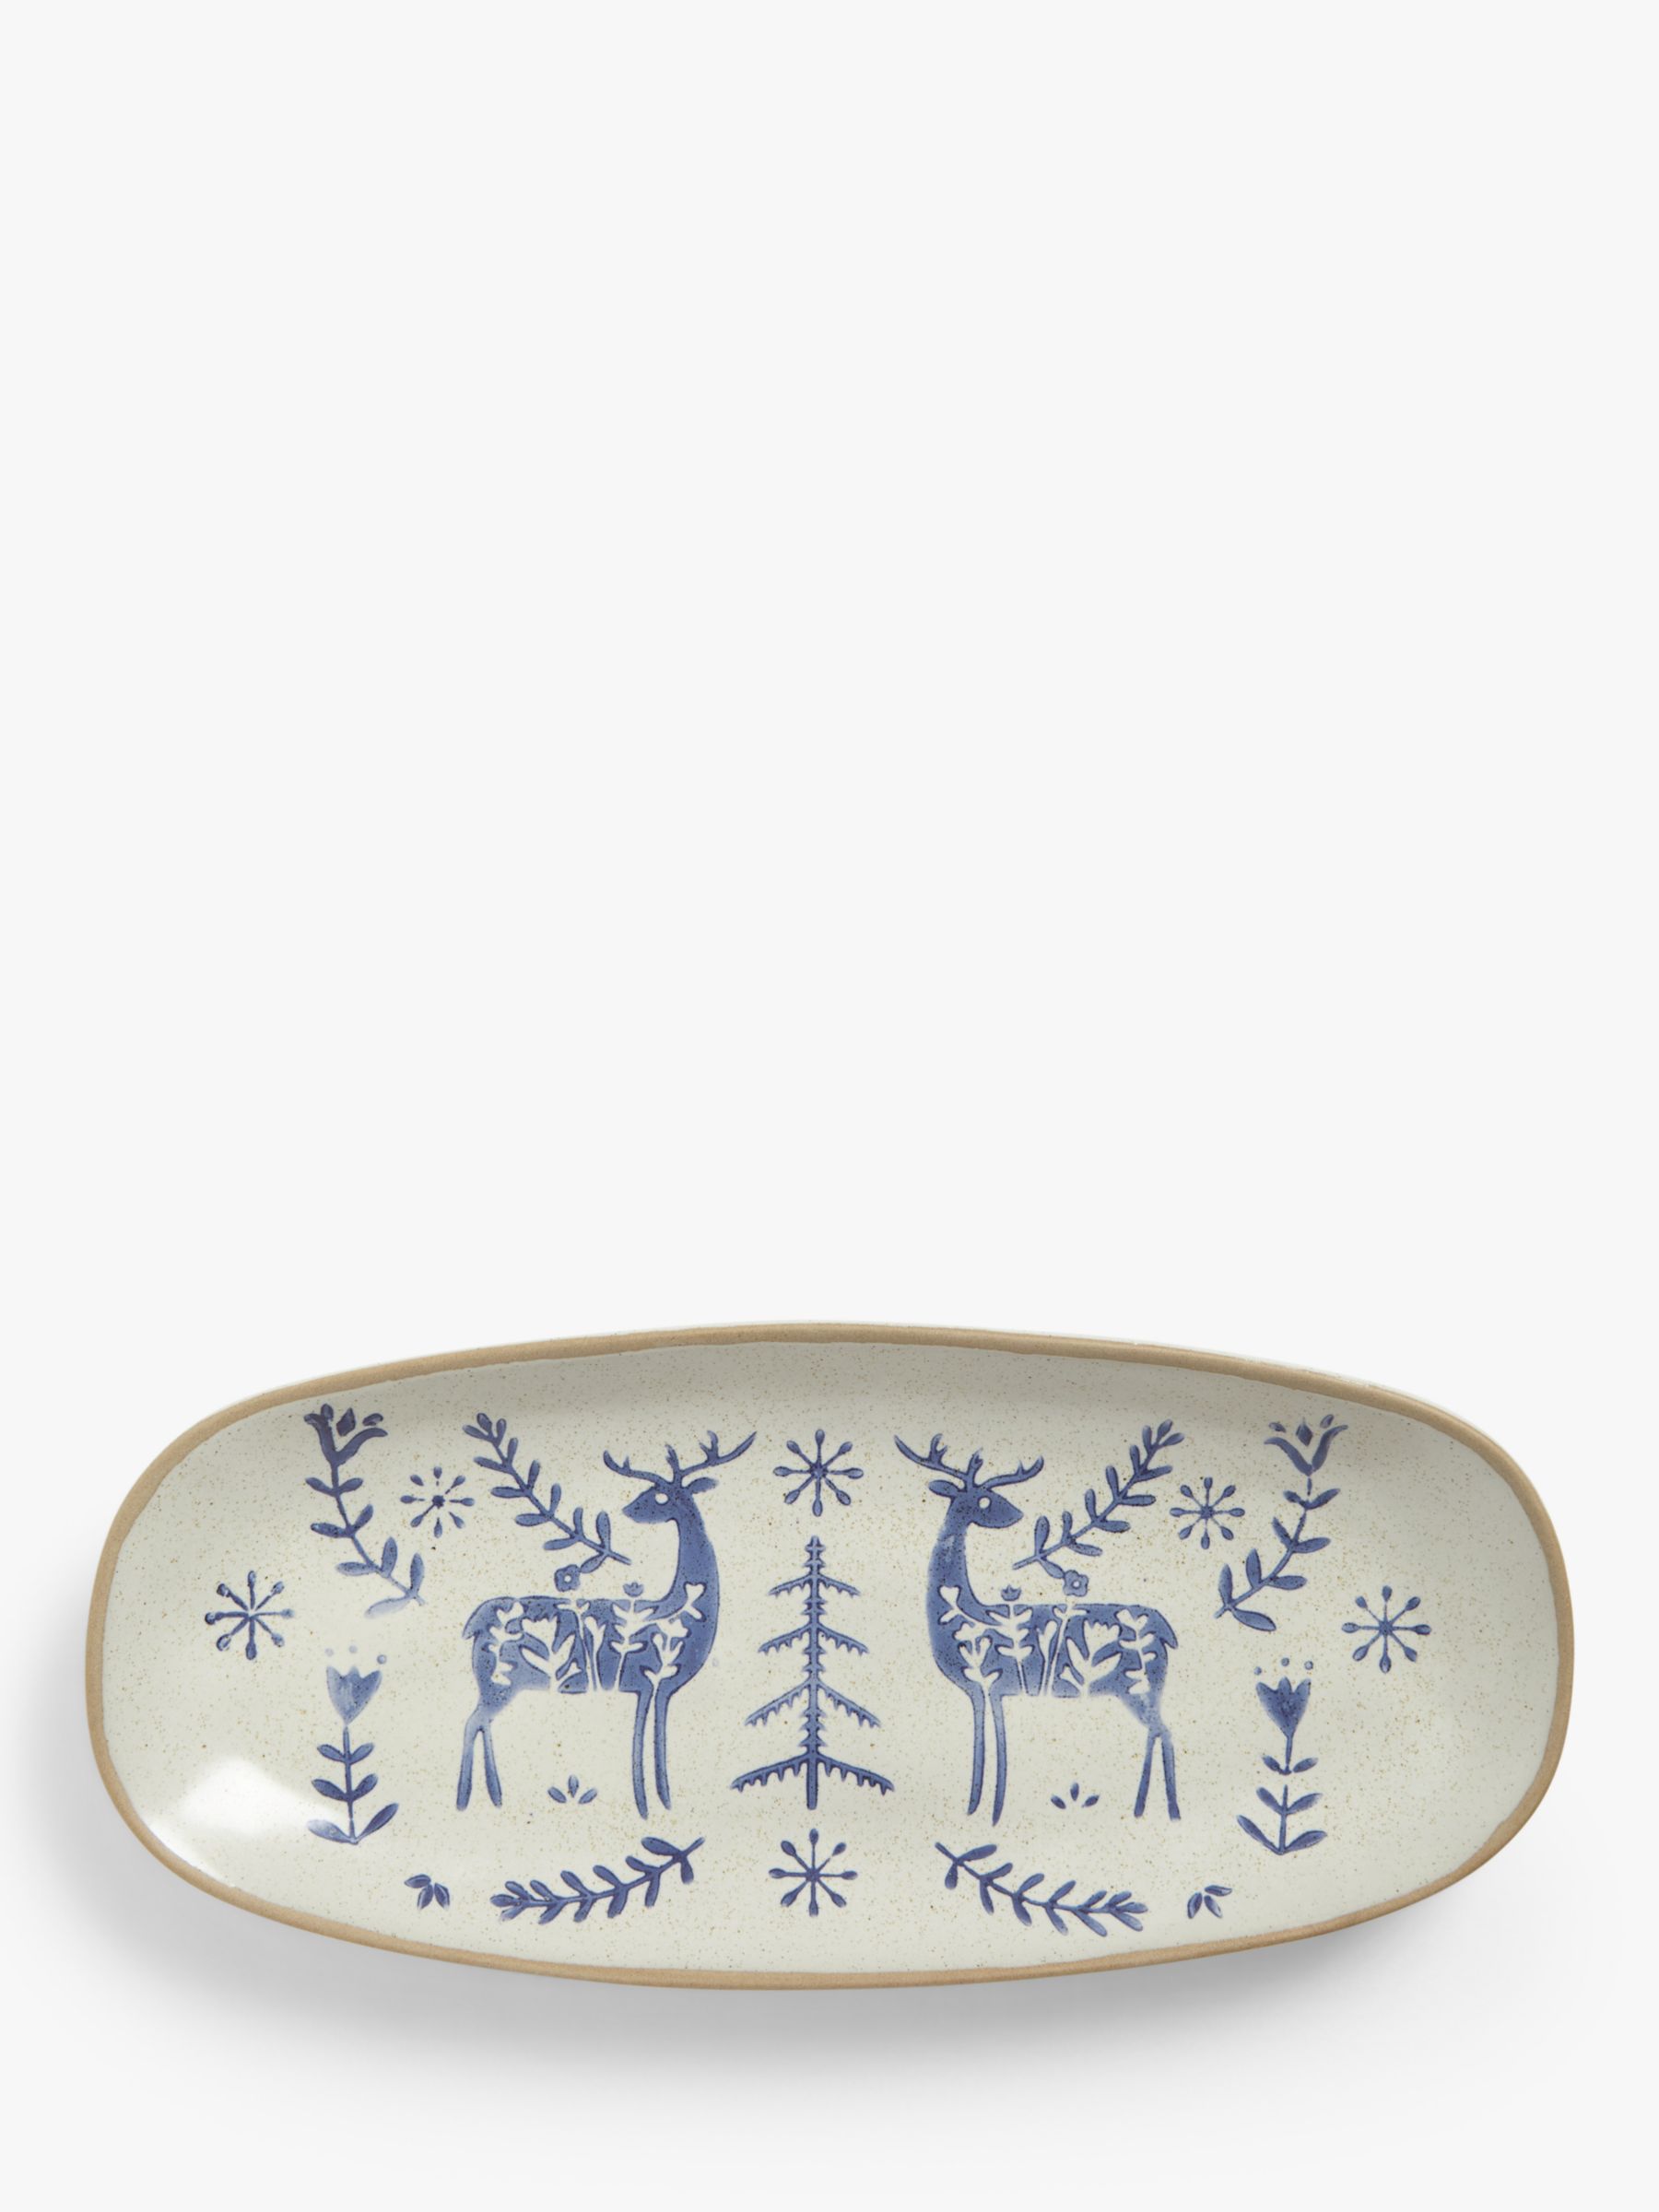 John Lewis Woodland Floral Deer Glazed Stoneware Platter, 25cm, Beige/Blue